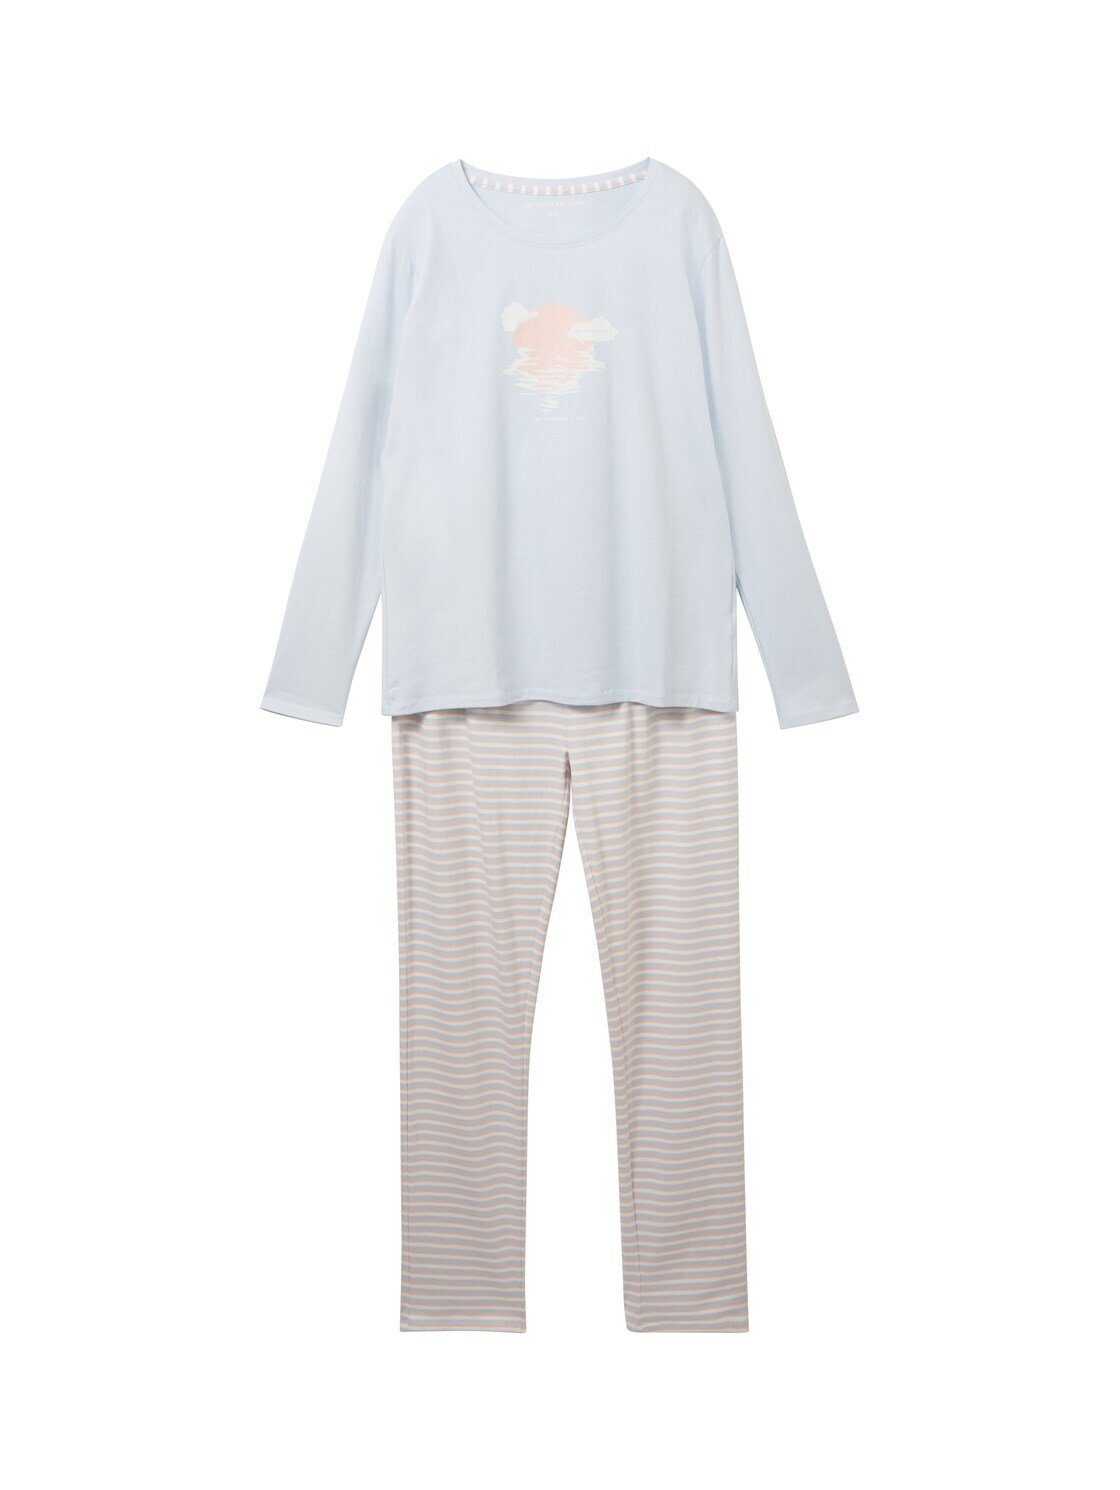 TOM TAILOR Schlafhose Pyjama mit Motivprint, Unser Model ist 177 cm groß  und trägt Größe S/36